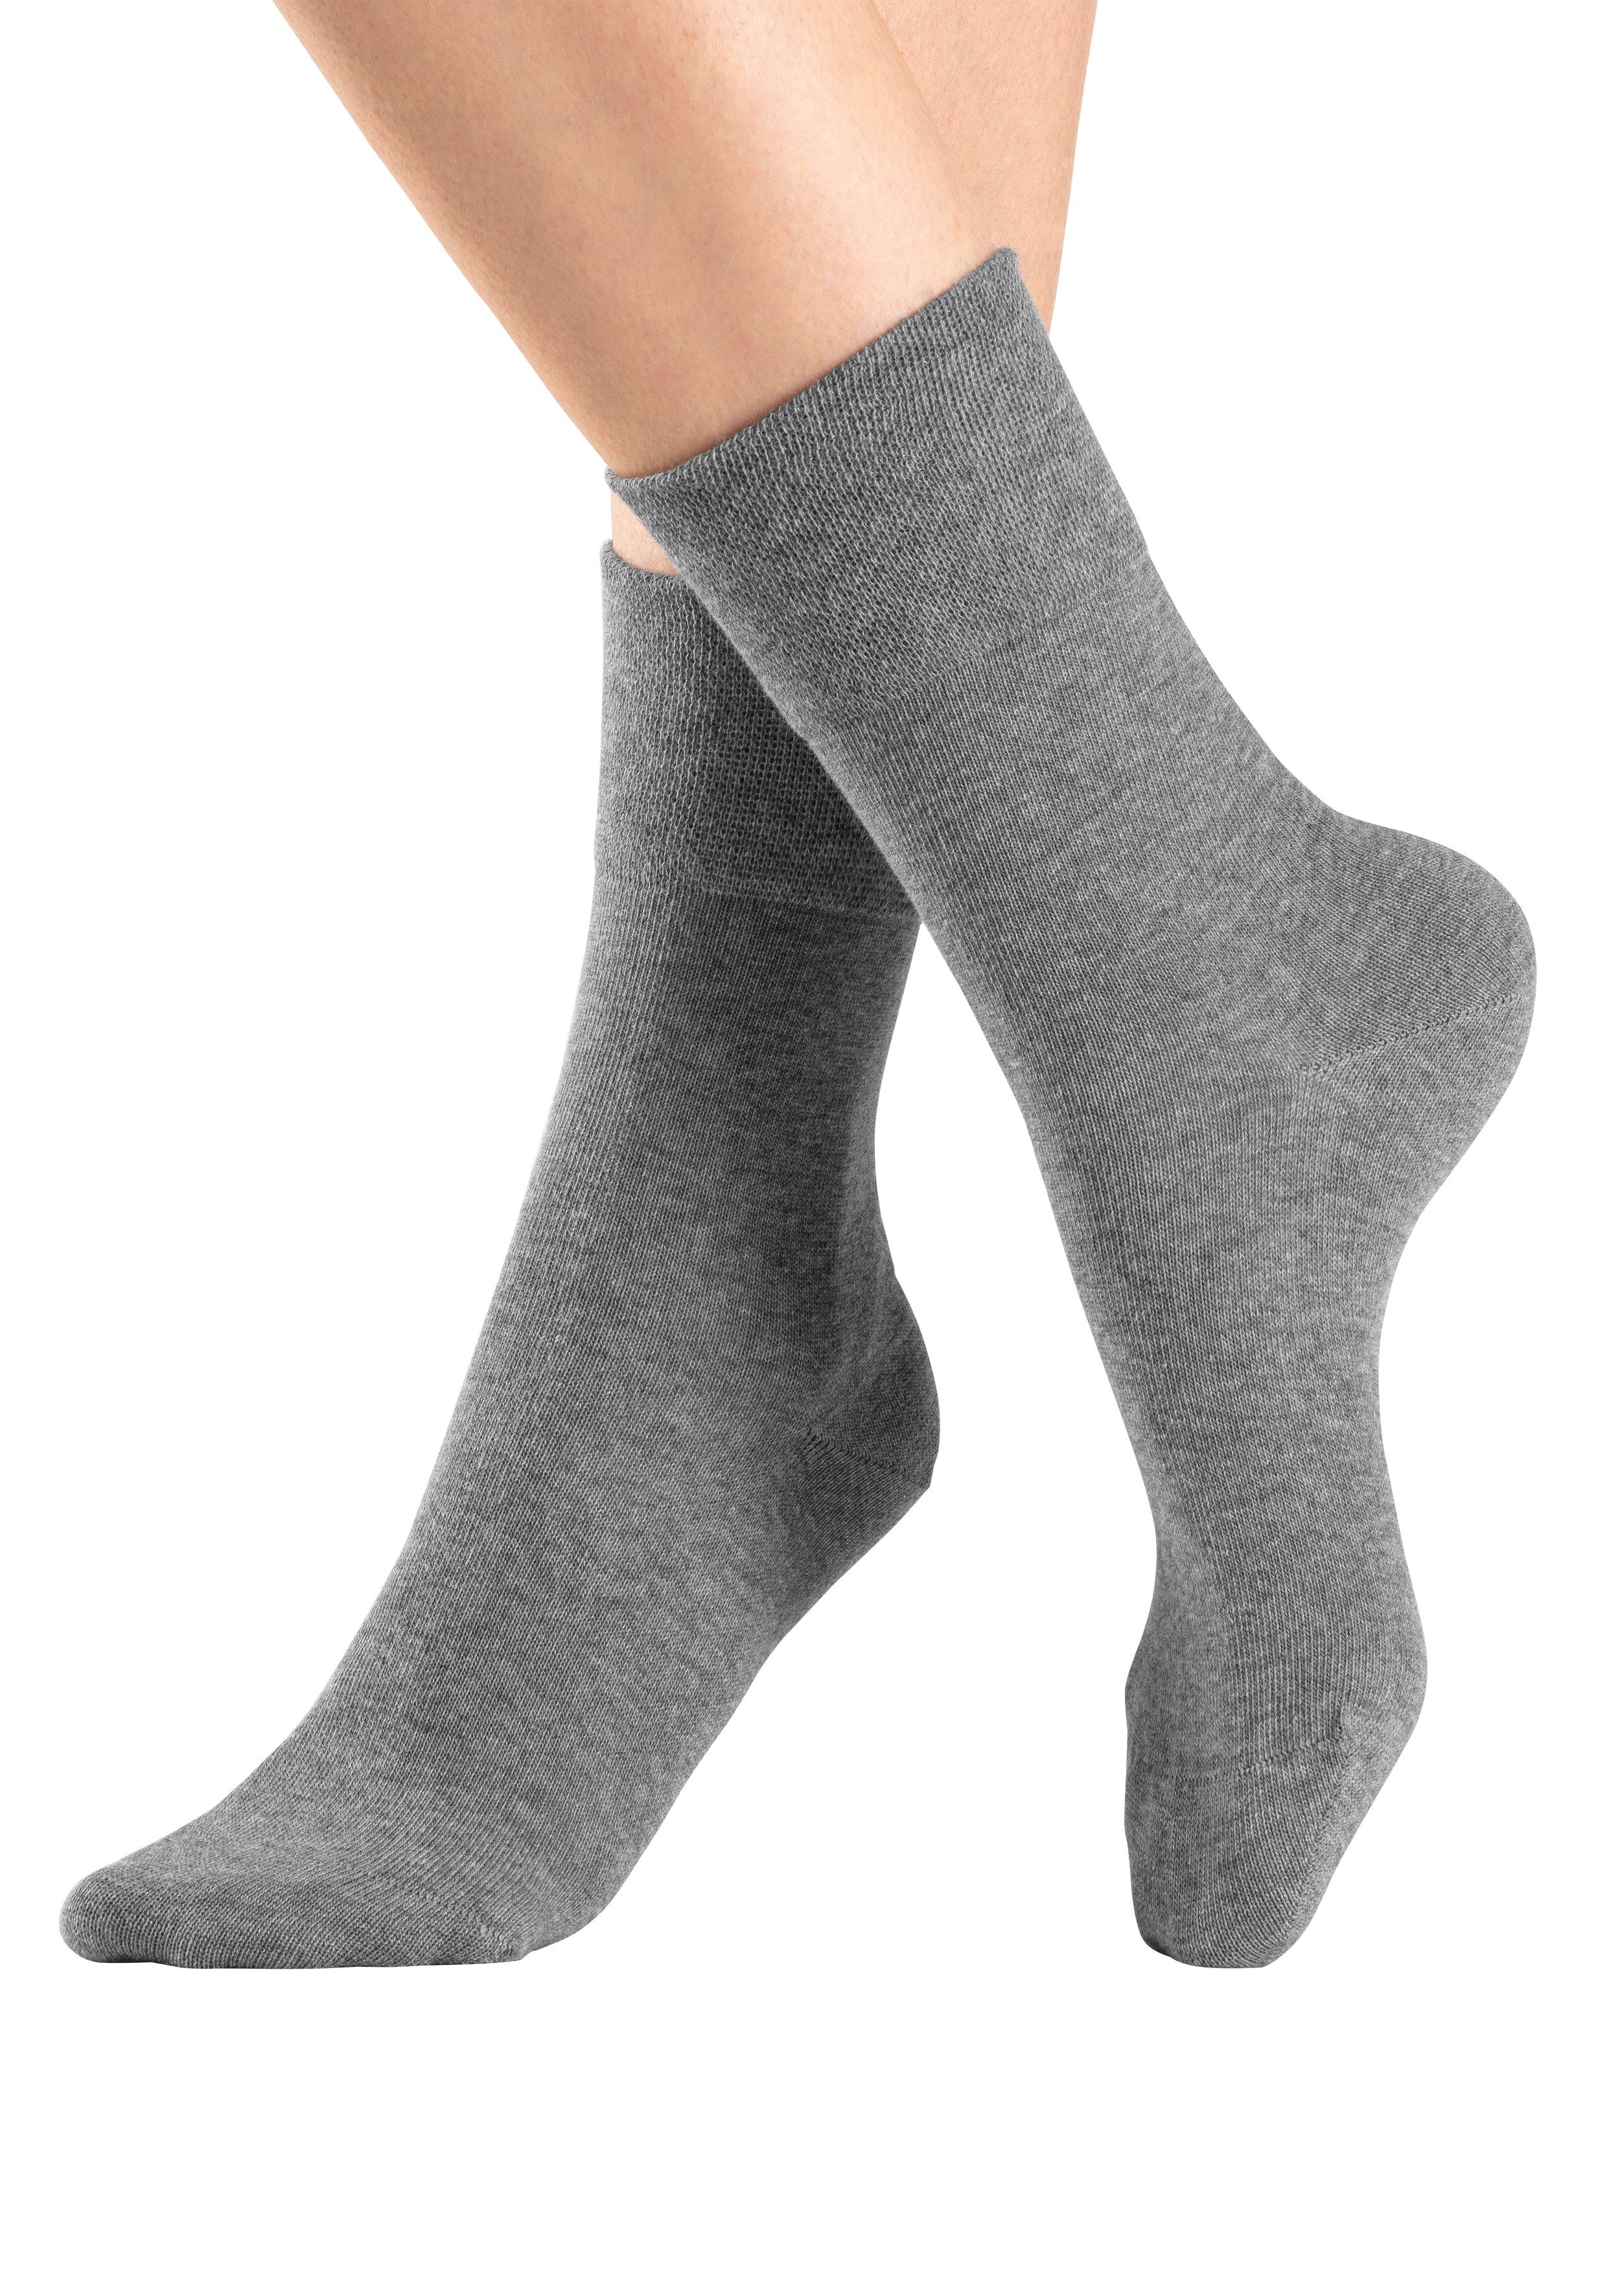 Wäsche/Bademode Socken H.I.S Socken (6-Paar) mit Komfortbund auch für Diabetiker geeignet